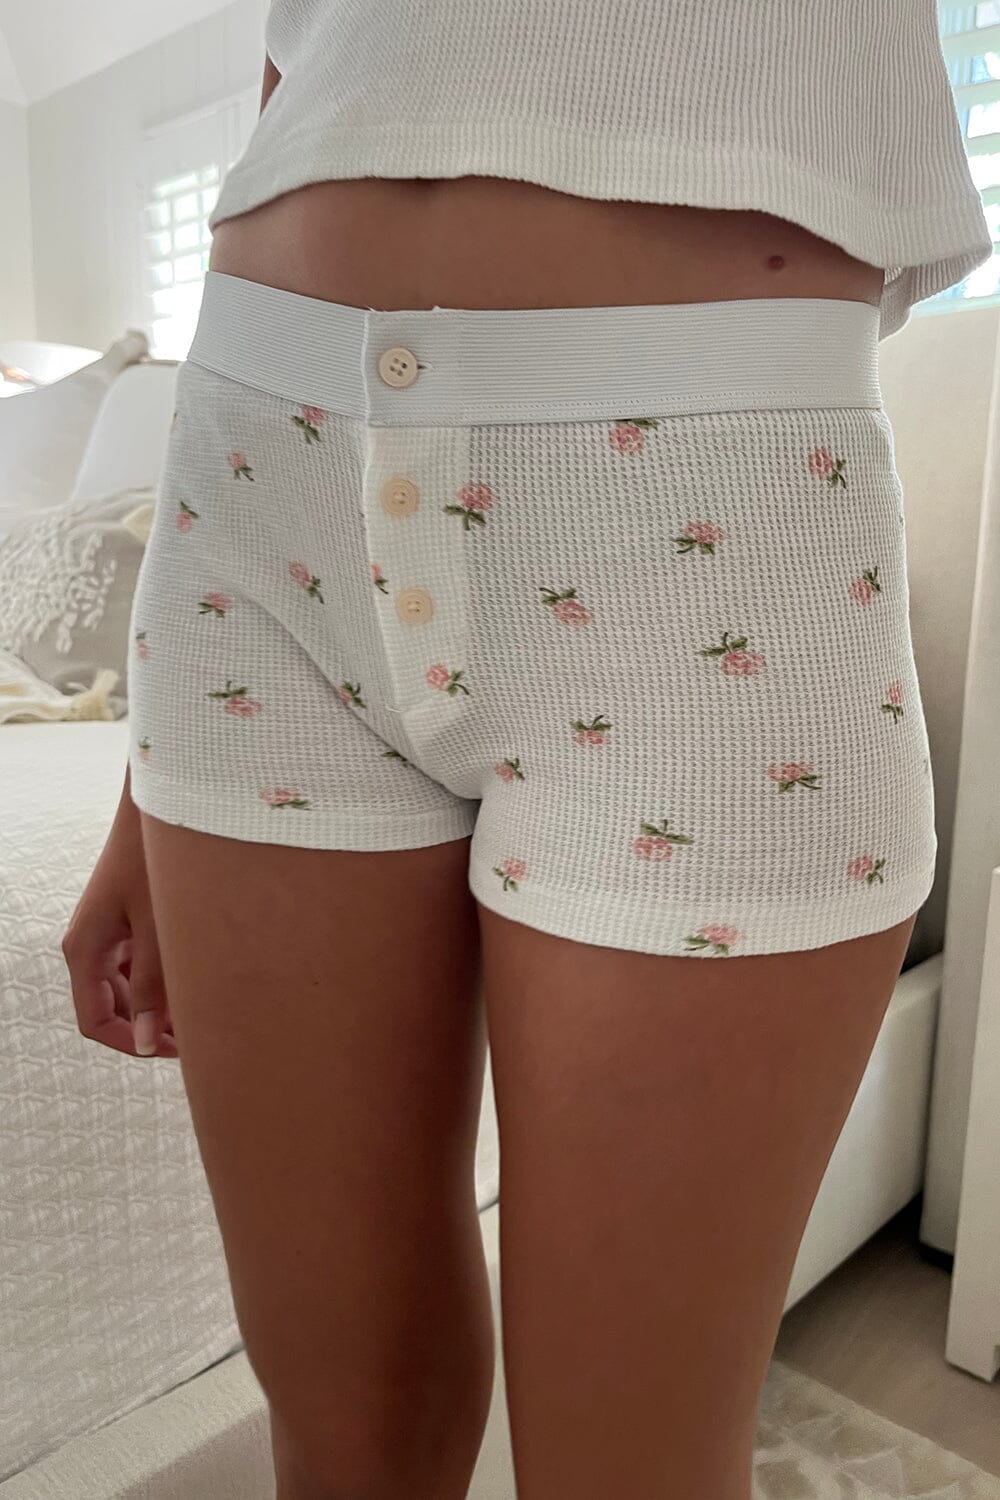 Brandy Melville, Intimates & Sleepwear, Brandy Melville White Floral  Eyelet Undies Panties Underwear